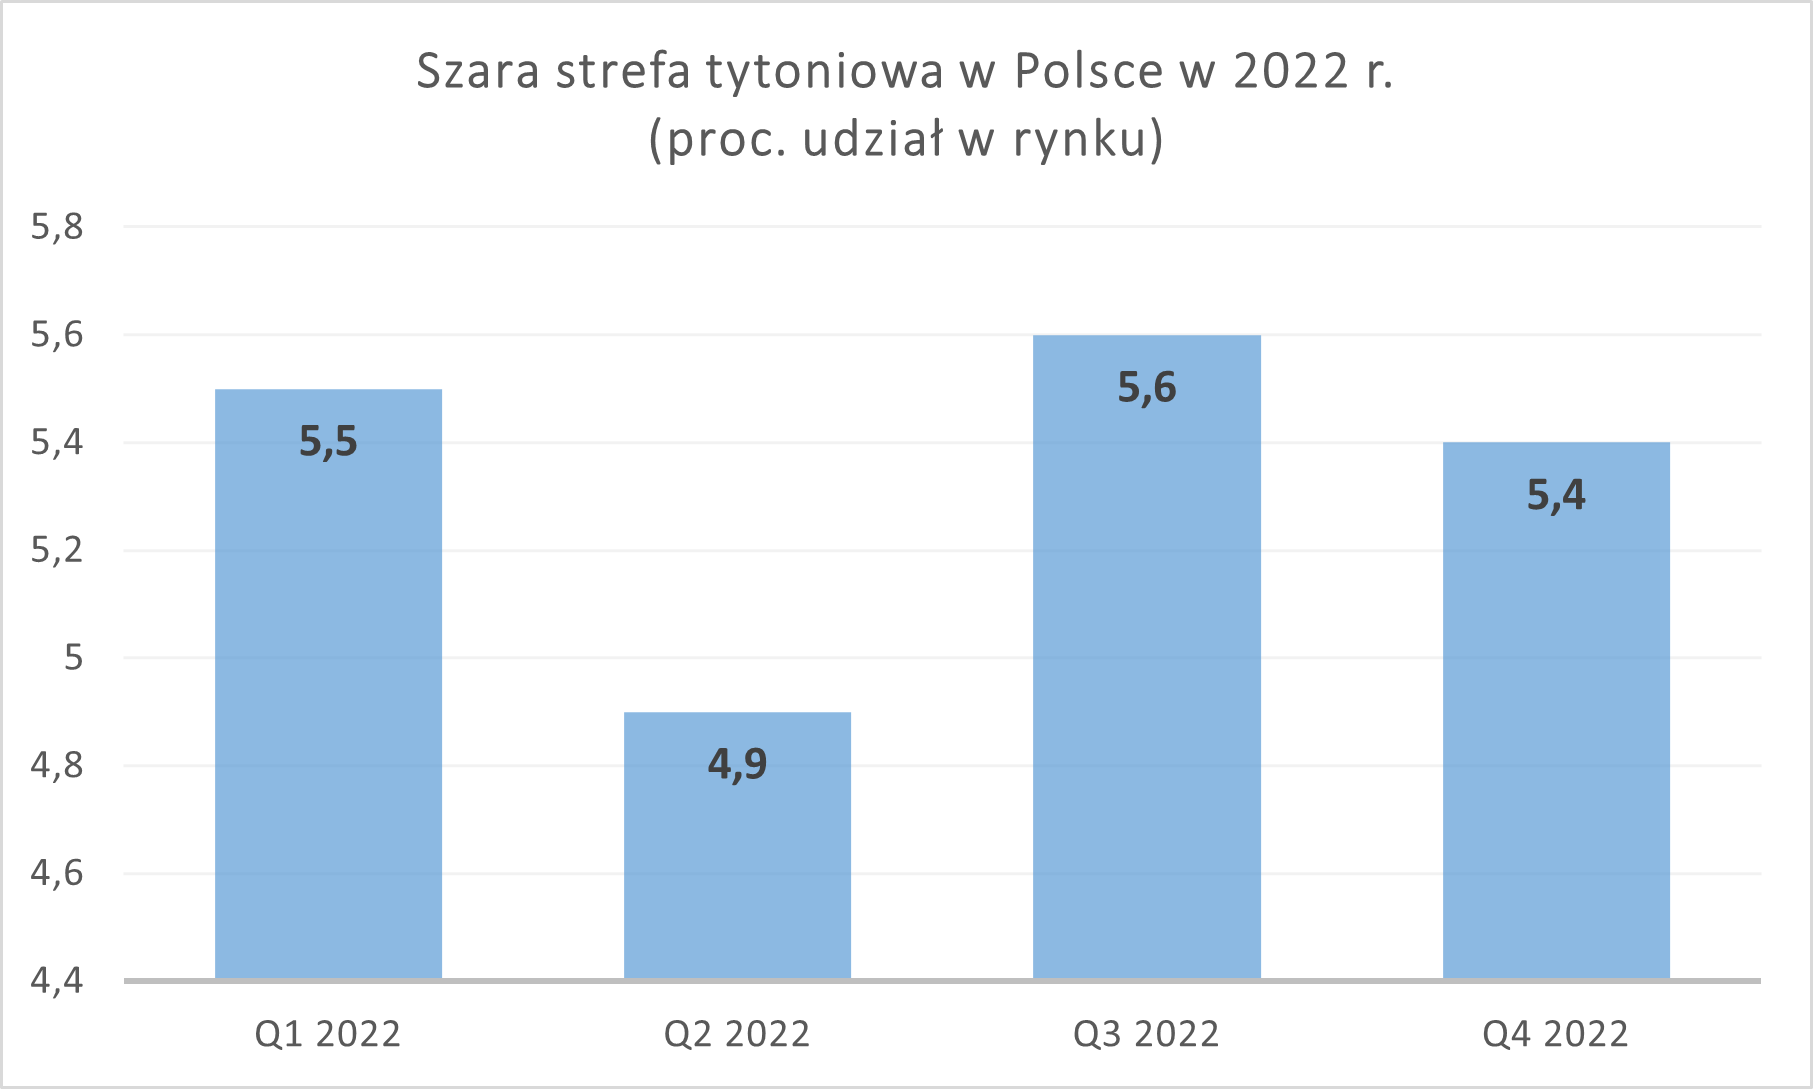 Szara strefa tytoniowa w Polsce